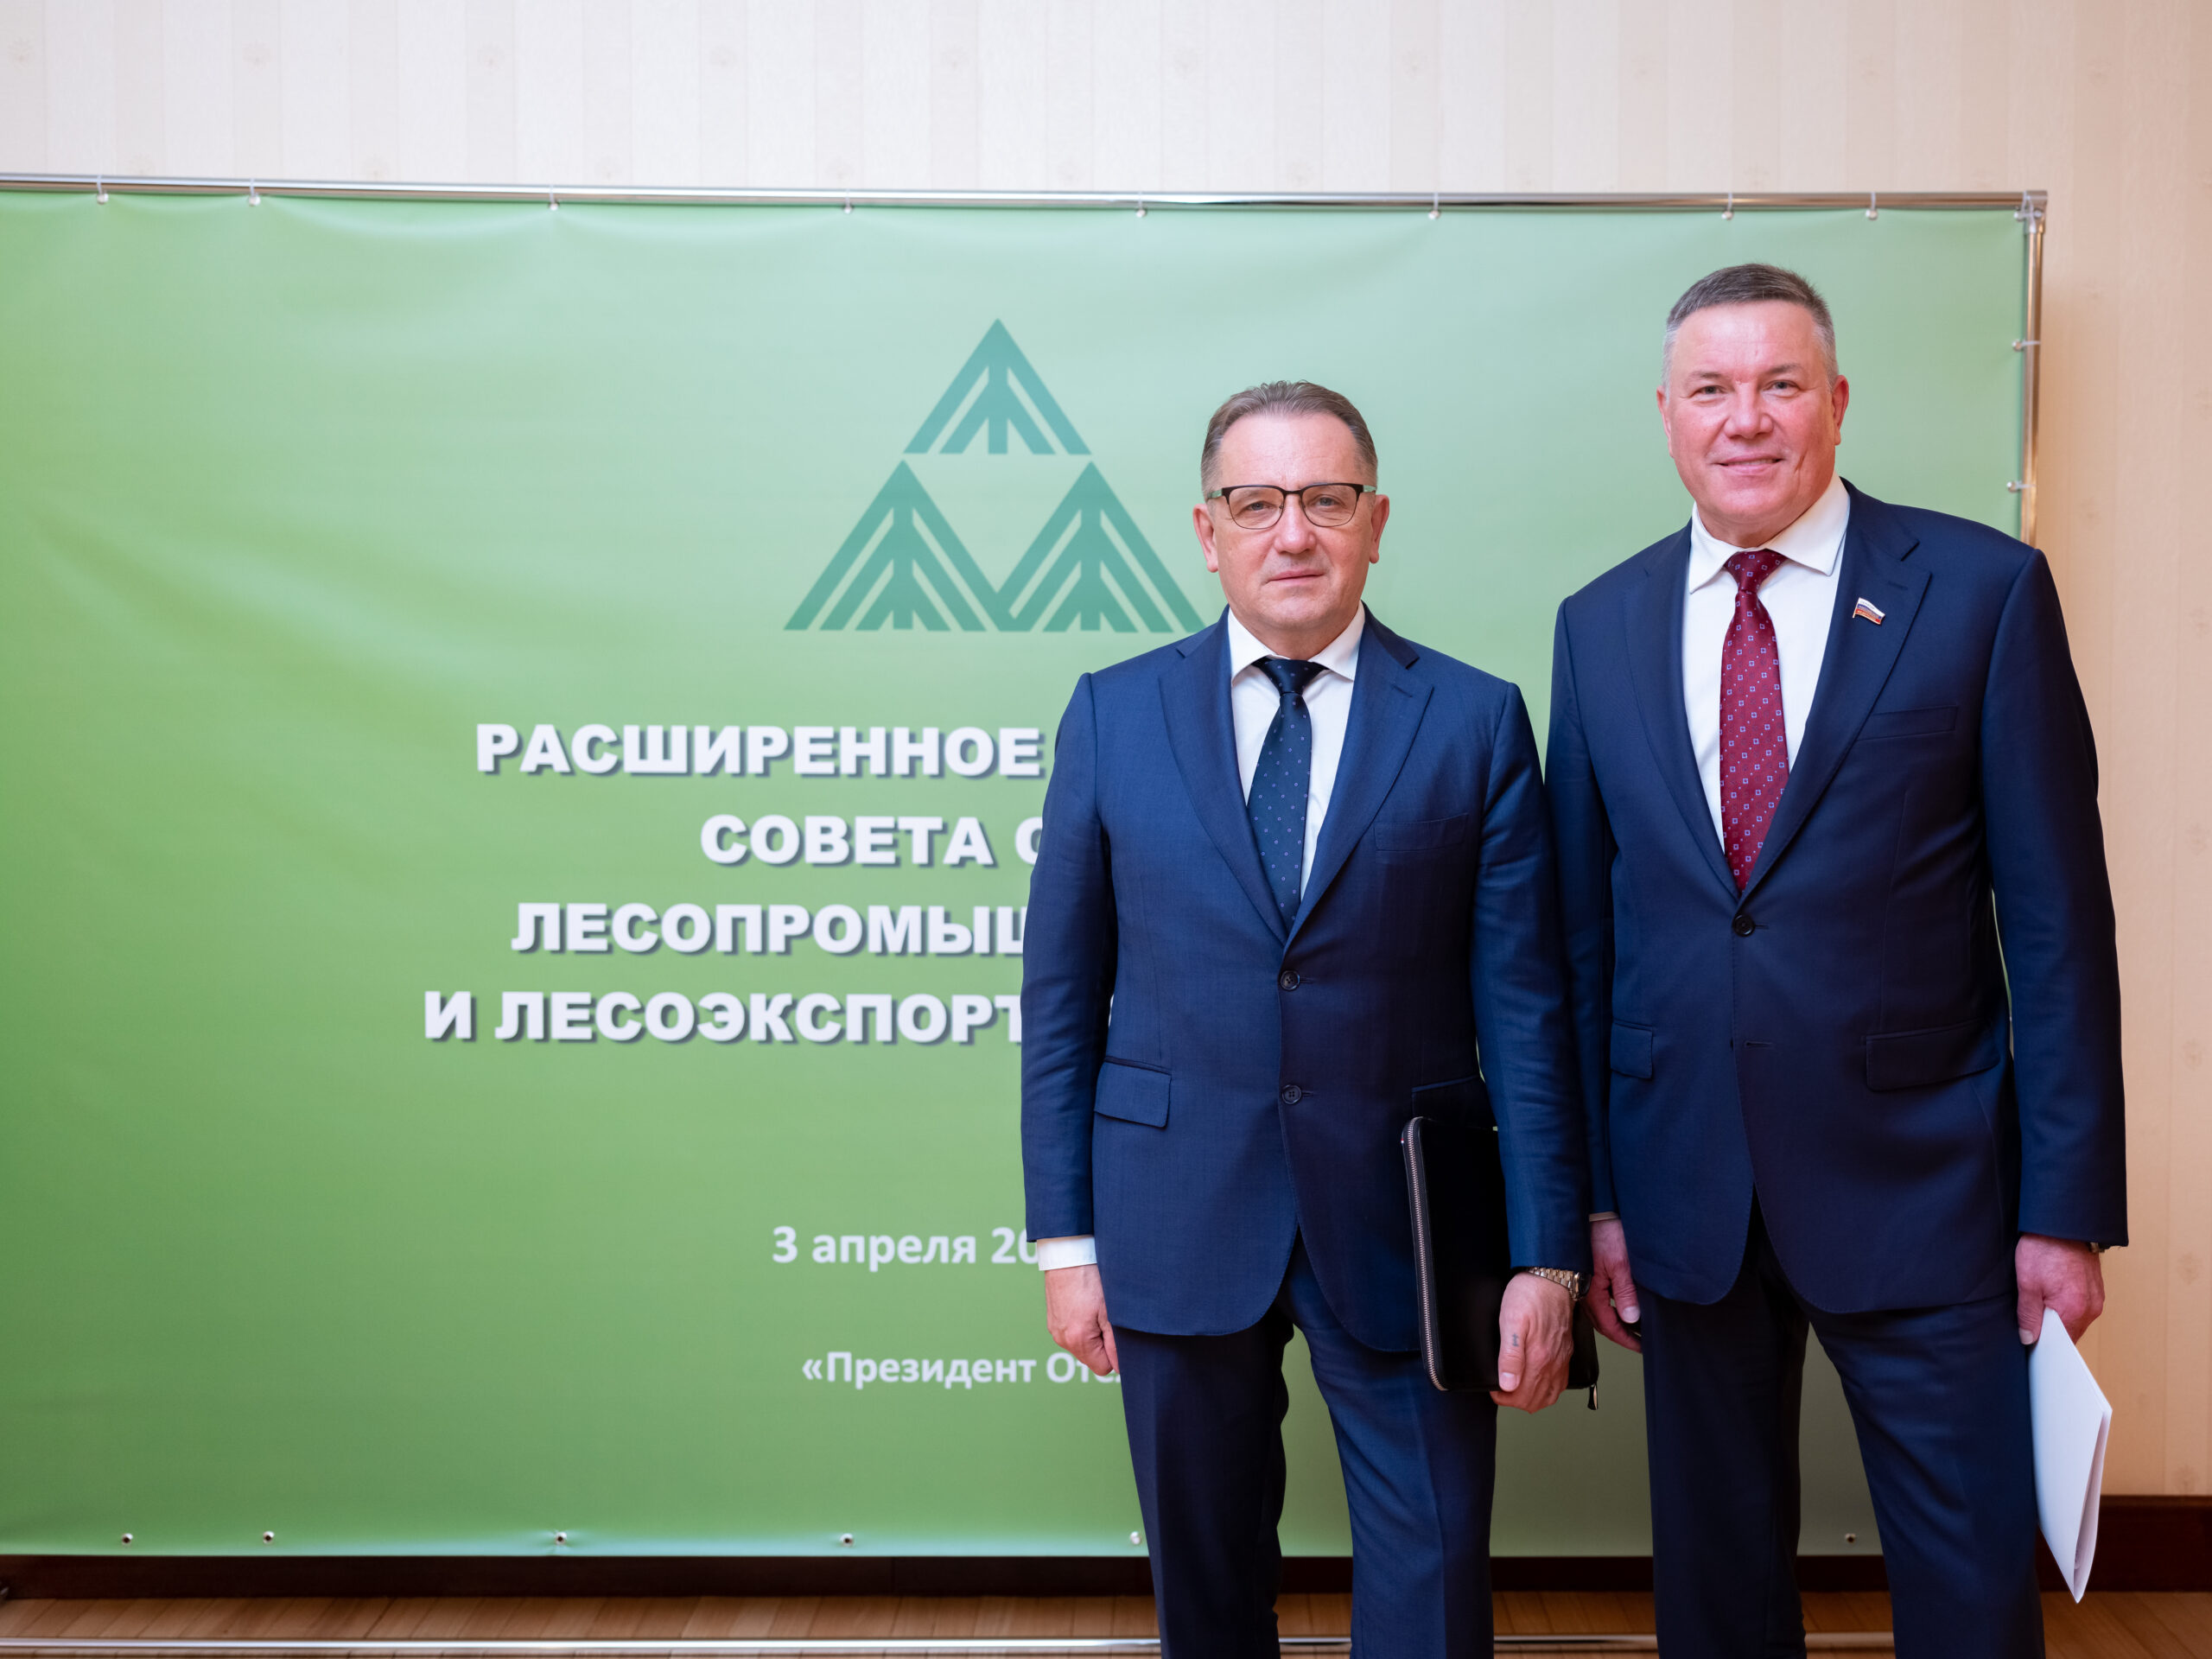 Александр Чуркин выступил на расширенном заседании Совета Союза лесопромышленников и лесоэкспортеров России